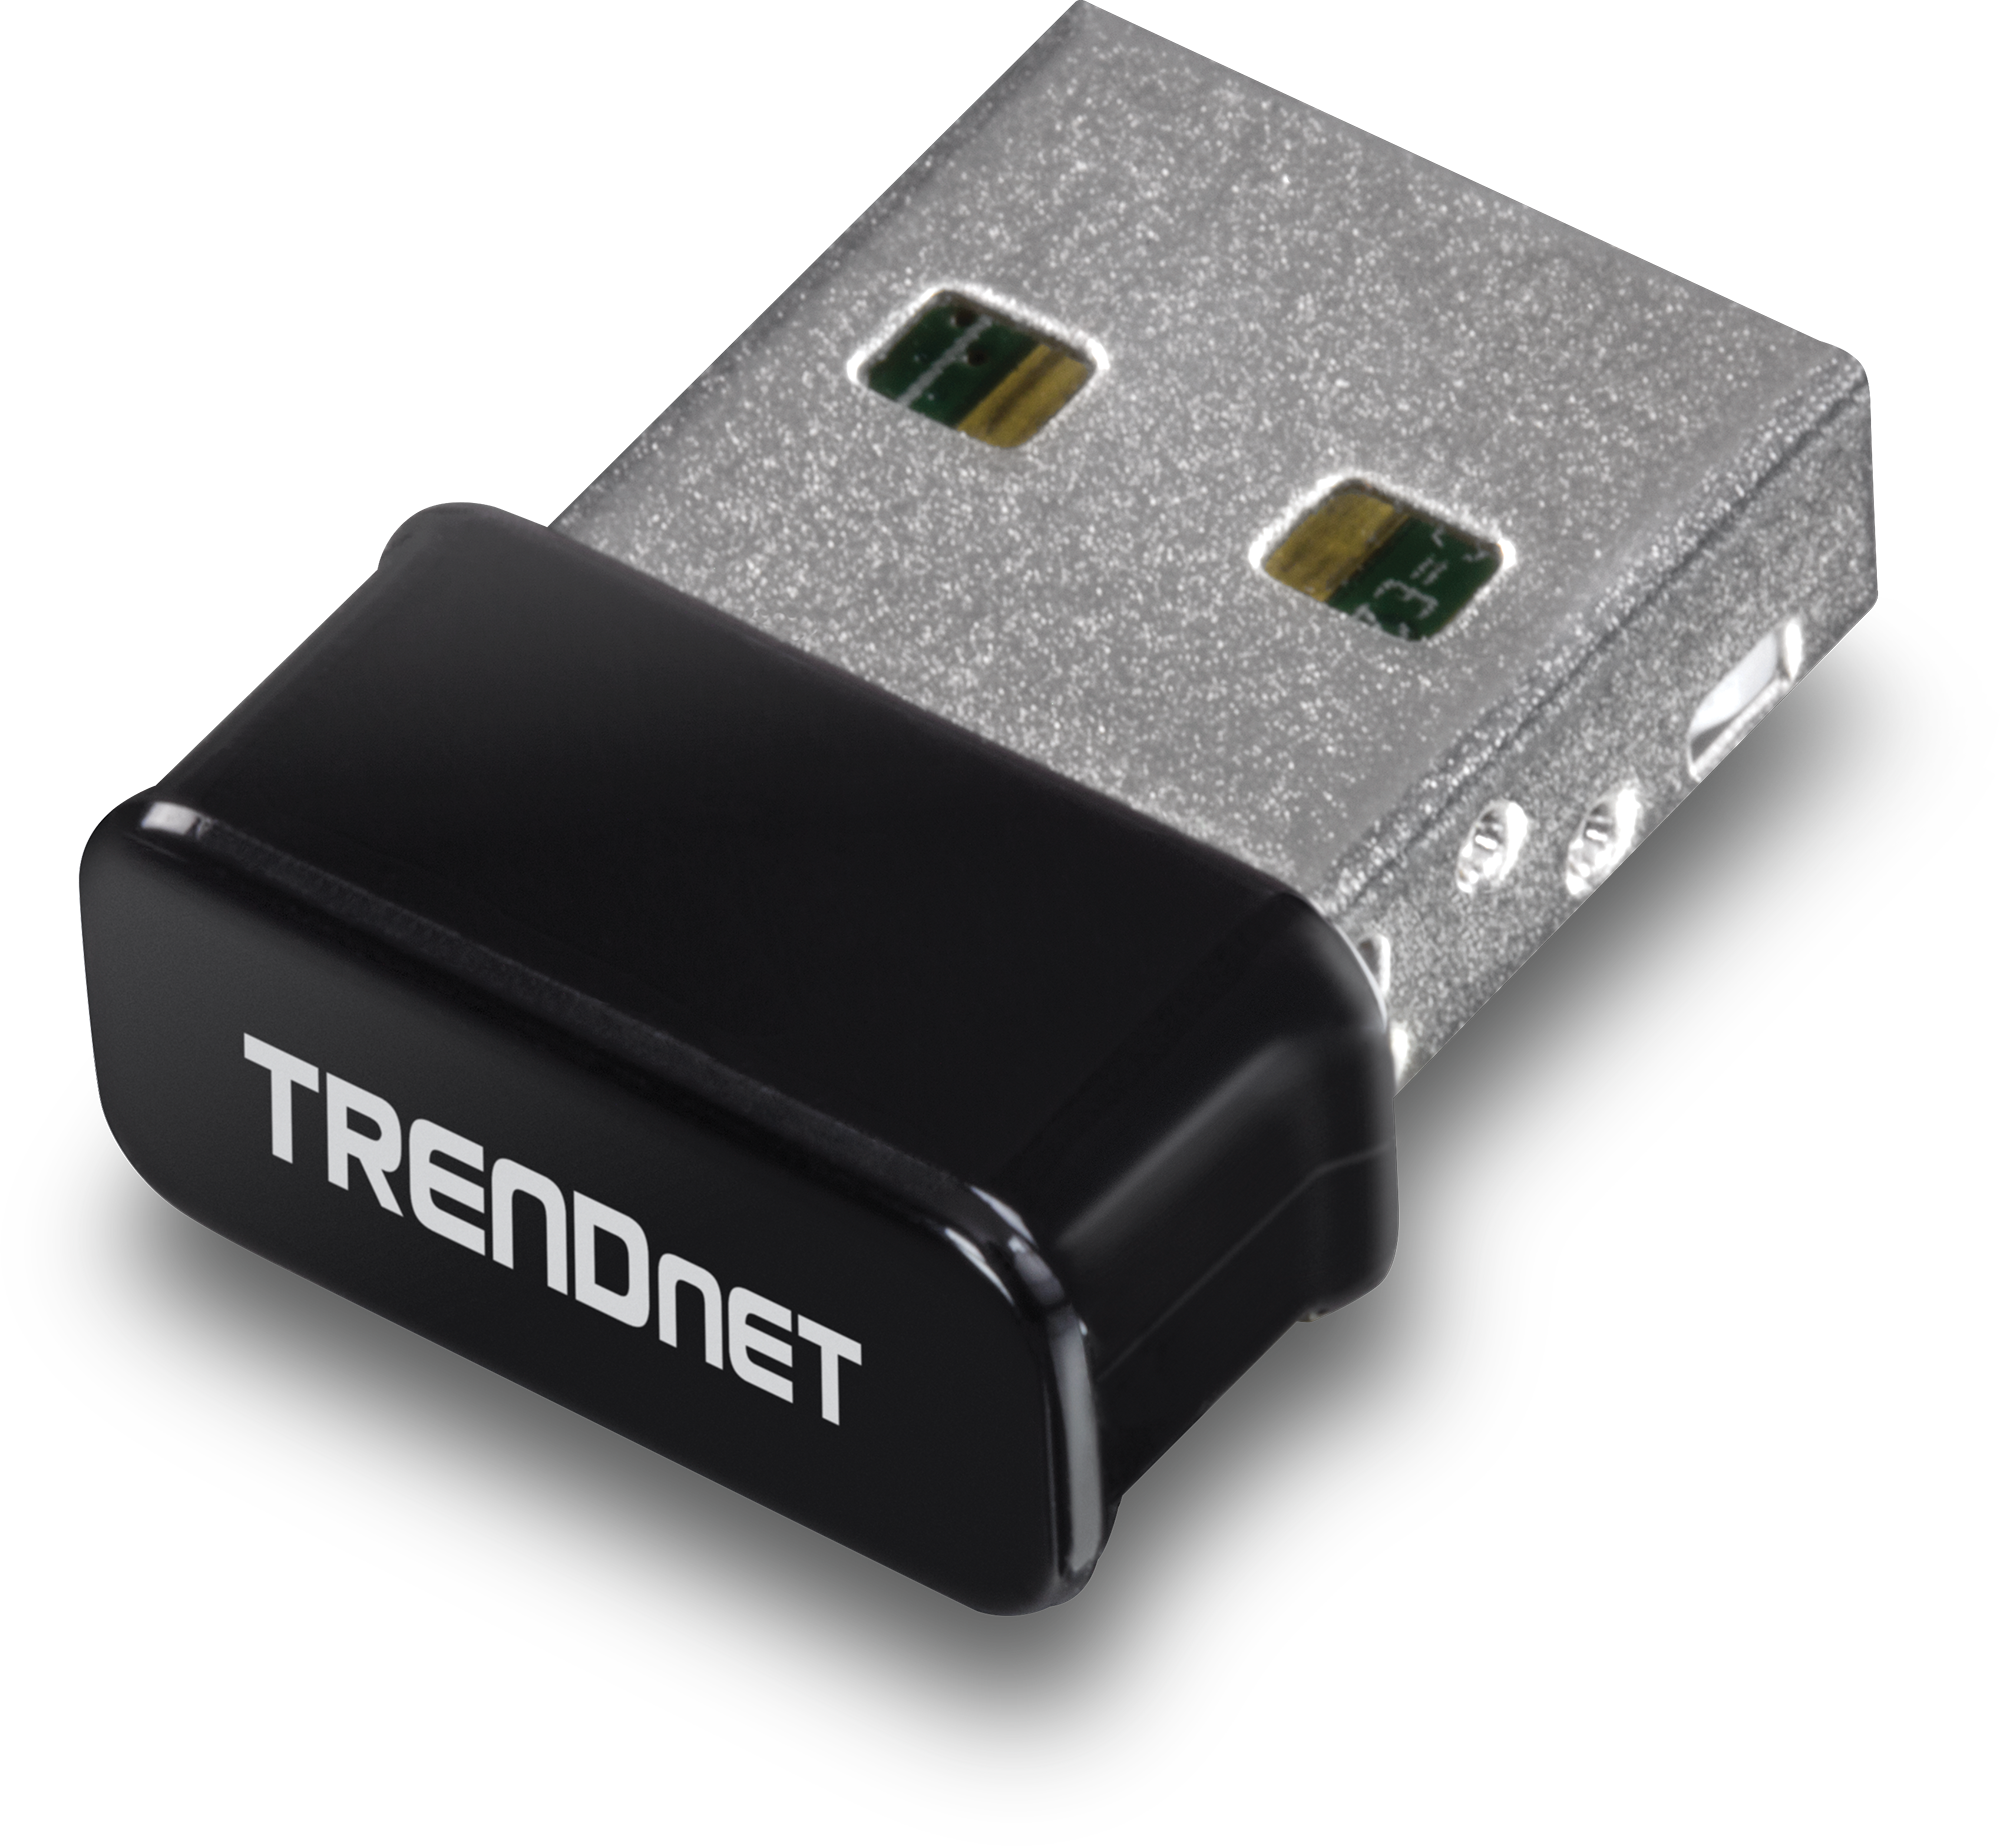 Адаптер беспроводной связи. TRENDNET tbw-108ub. Wi-Fi адаптер TRENDNET TEW-648ubm. Ac1200 Wireless USB Adapter. Wi Fi адаптер n150.